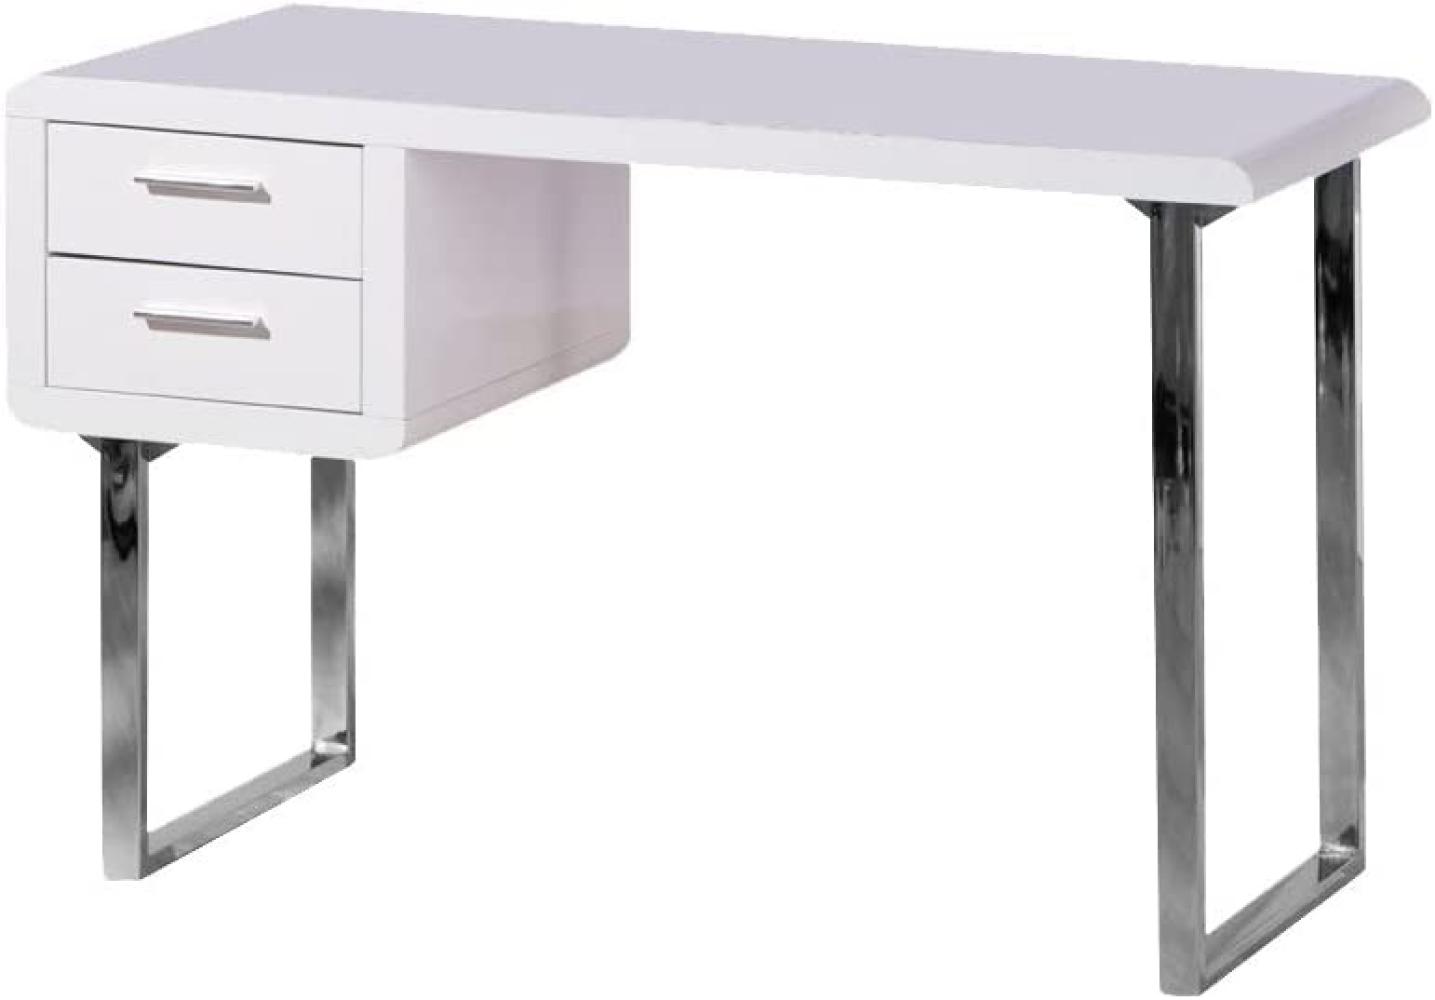 'Claude' Schreibtisch mit 2 Schubladen, Weiß Hochglanz/Metall verchromt, 76 x 55 x 120 cm Bild 1